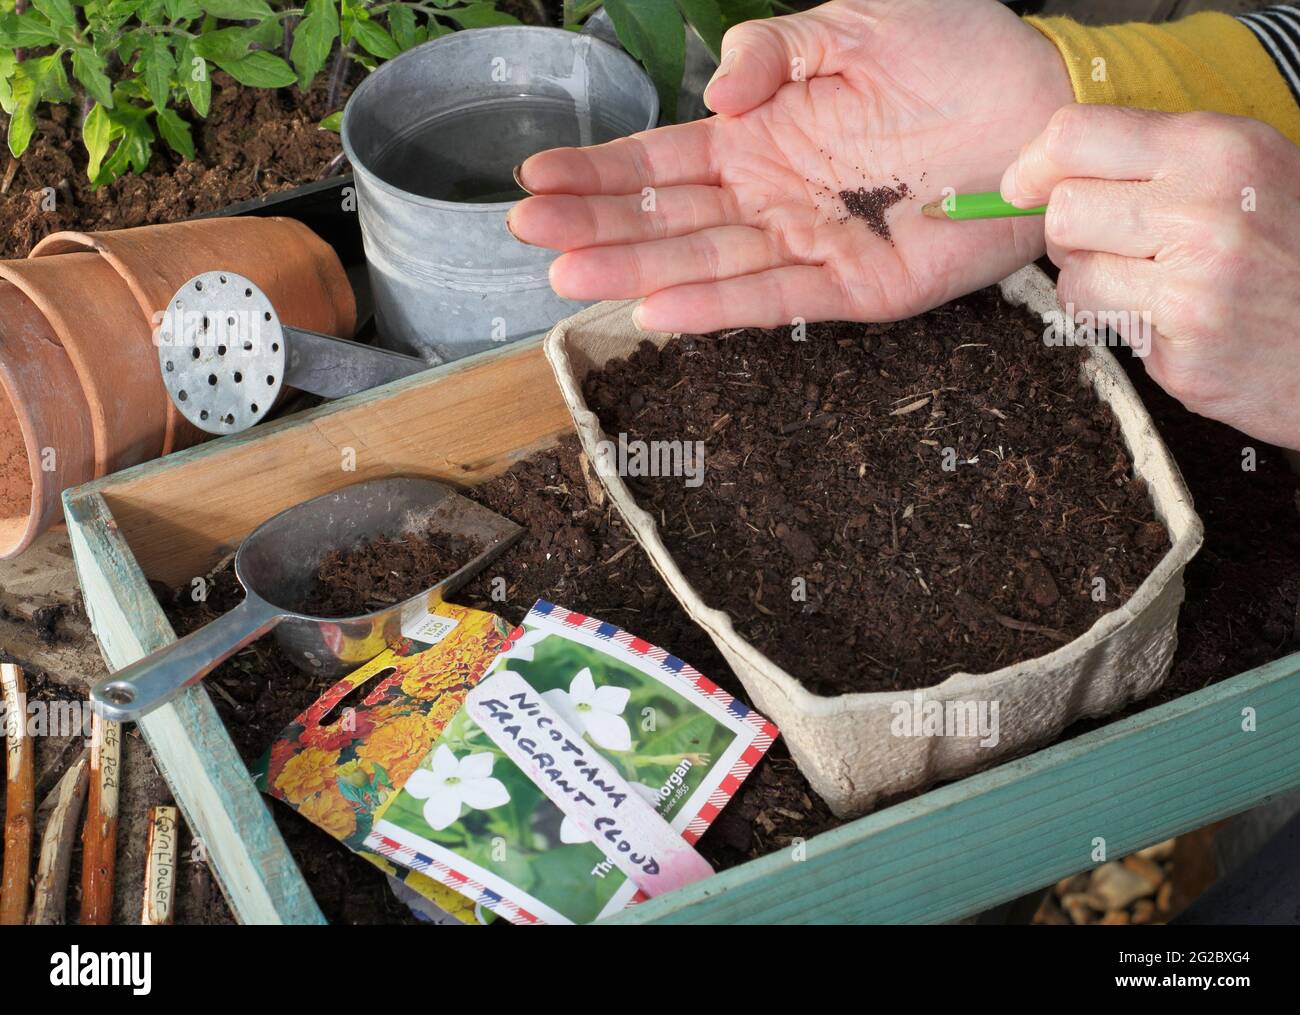 Semina piccoli semi di fiori - Nicotiana 'nuvola fragrante' - in un vassoio battendo delicatamente la mano con una matita per aiutare la spaziatura dei semi uniforme. REGNO UNITO Foto Stock